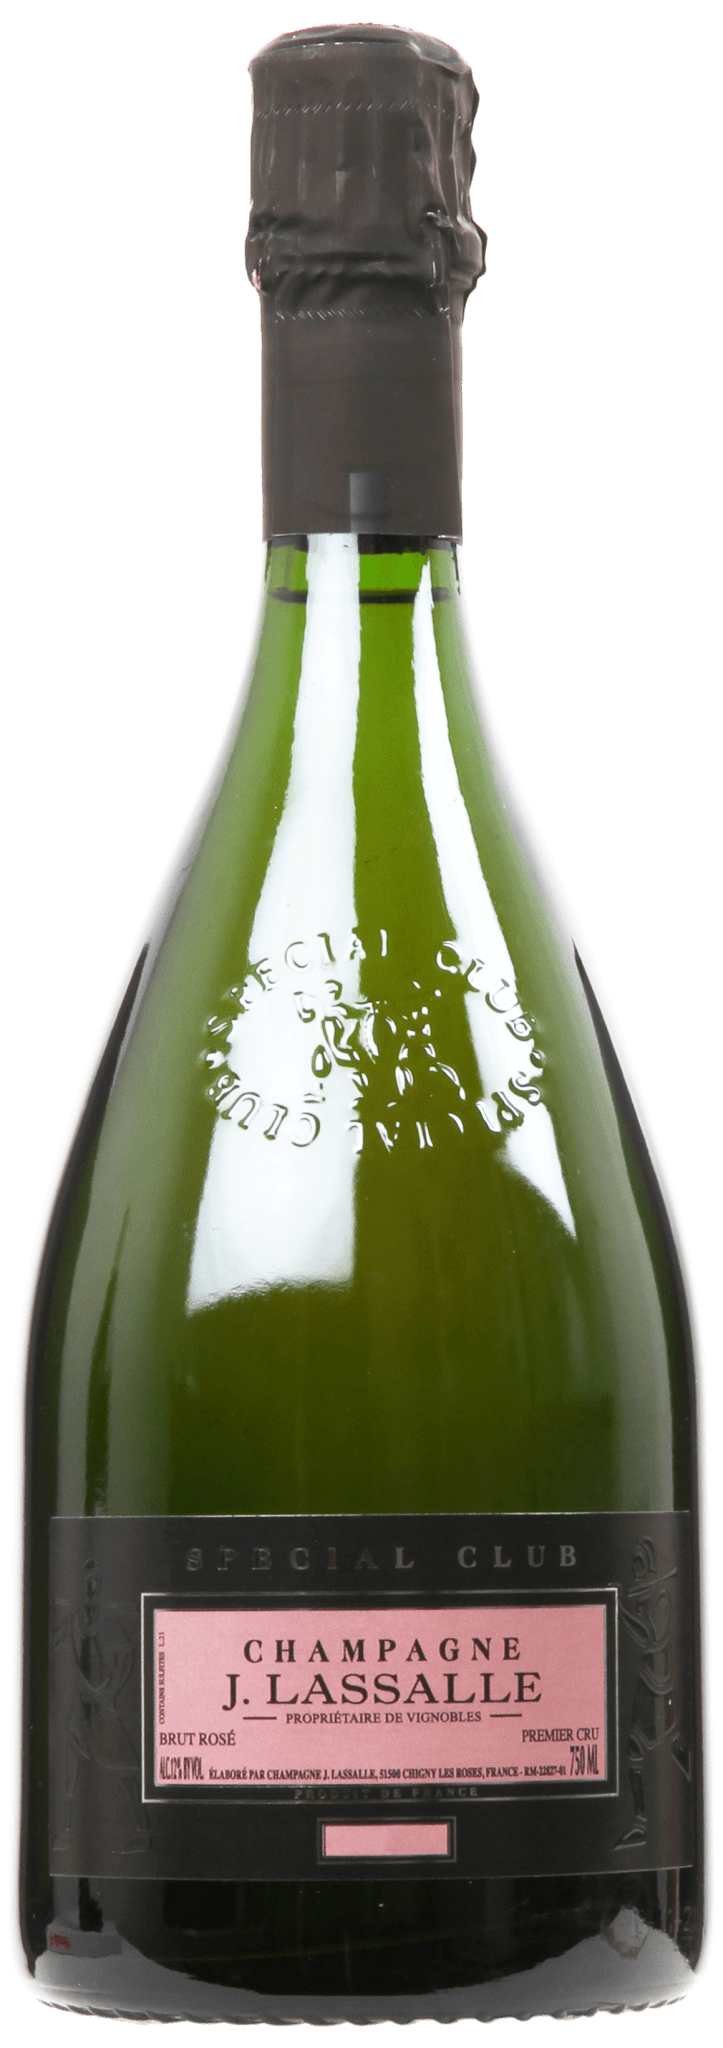 Billede af Champagne J. Lassalle, Champagne Spécial Club Rosé Brut - Gaveæske, 2014